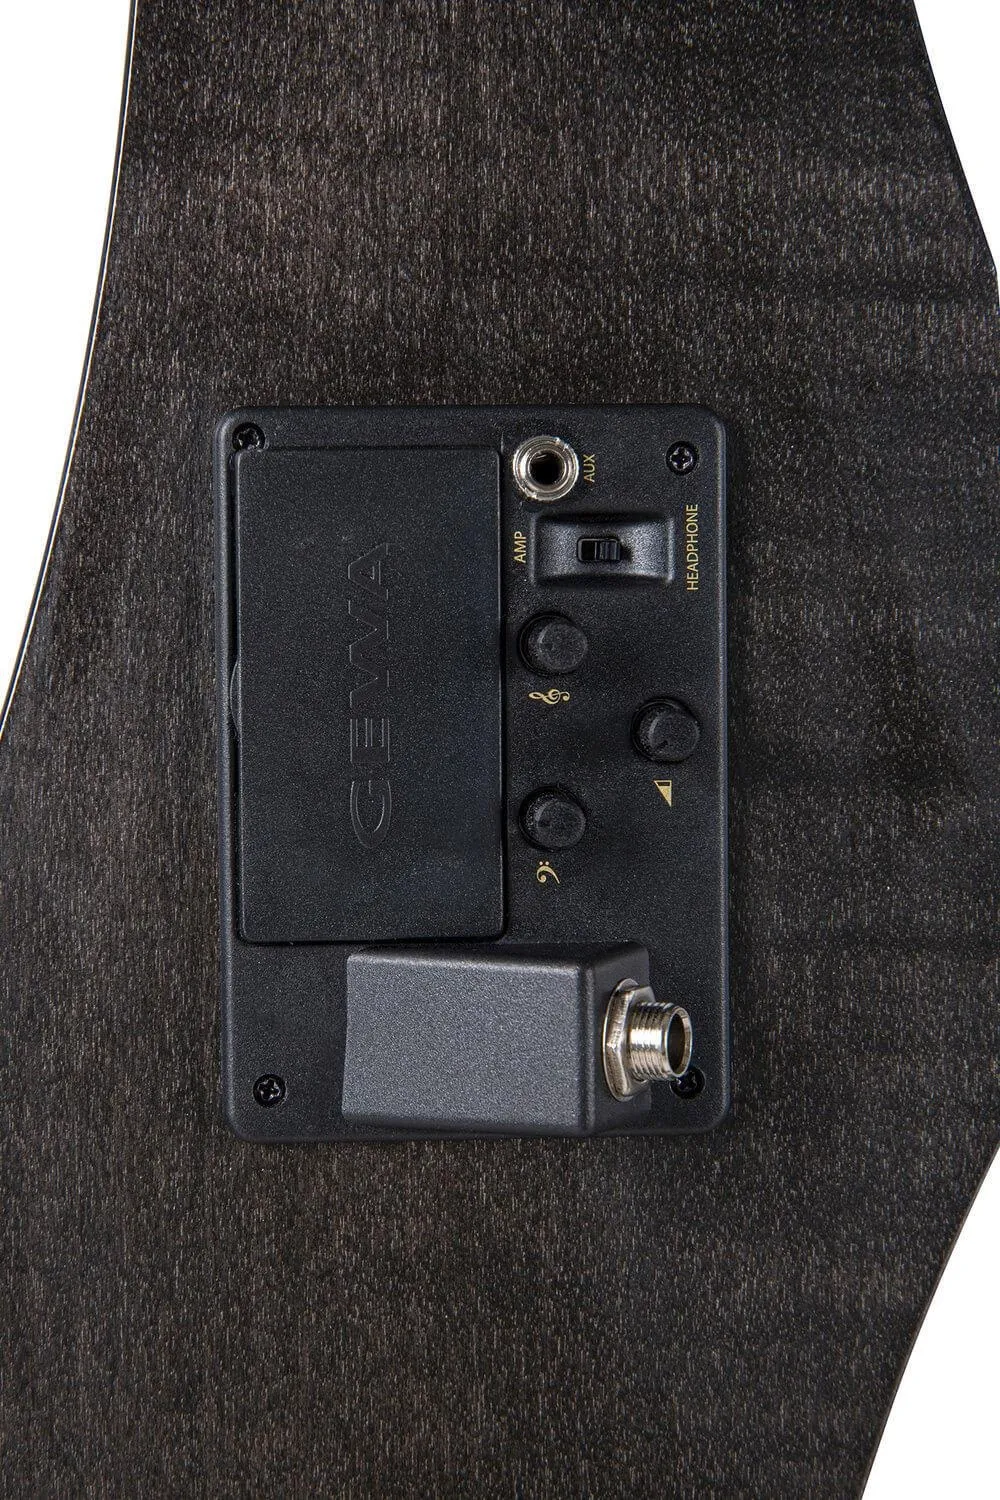 Ausgang wahlweise zwischen Kopfhörer und Verstärker-Ansicht von hinten eines GEWA E-CELLO NOVITA 3.0 in schwarz